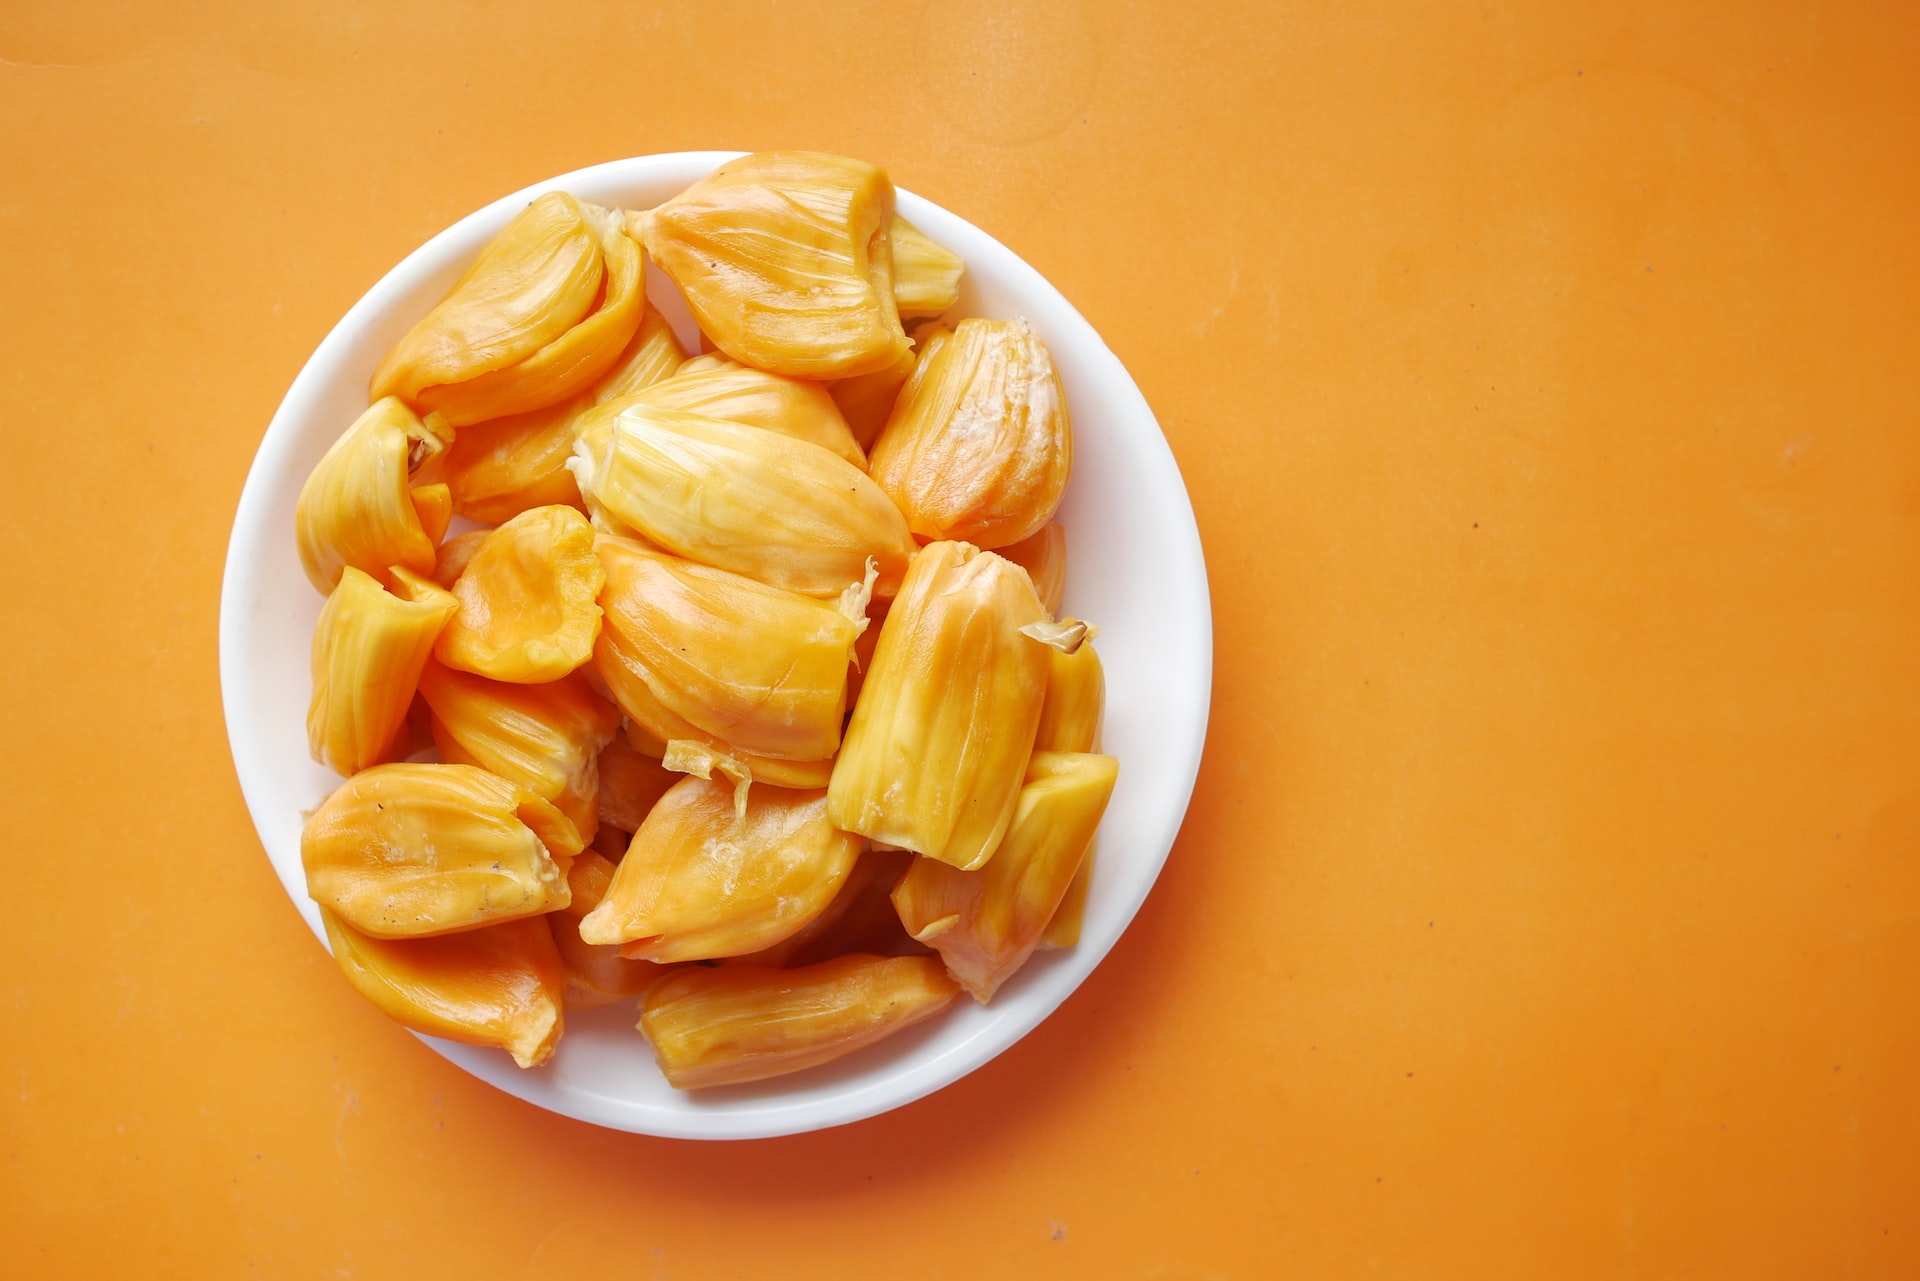 plate reveals jackfruit benefits